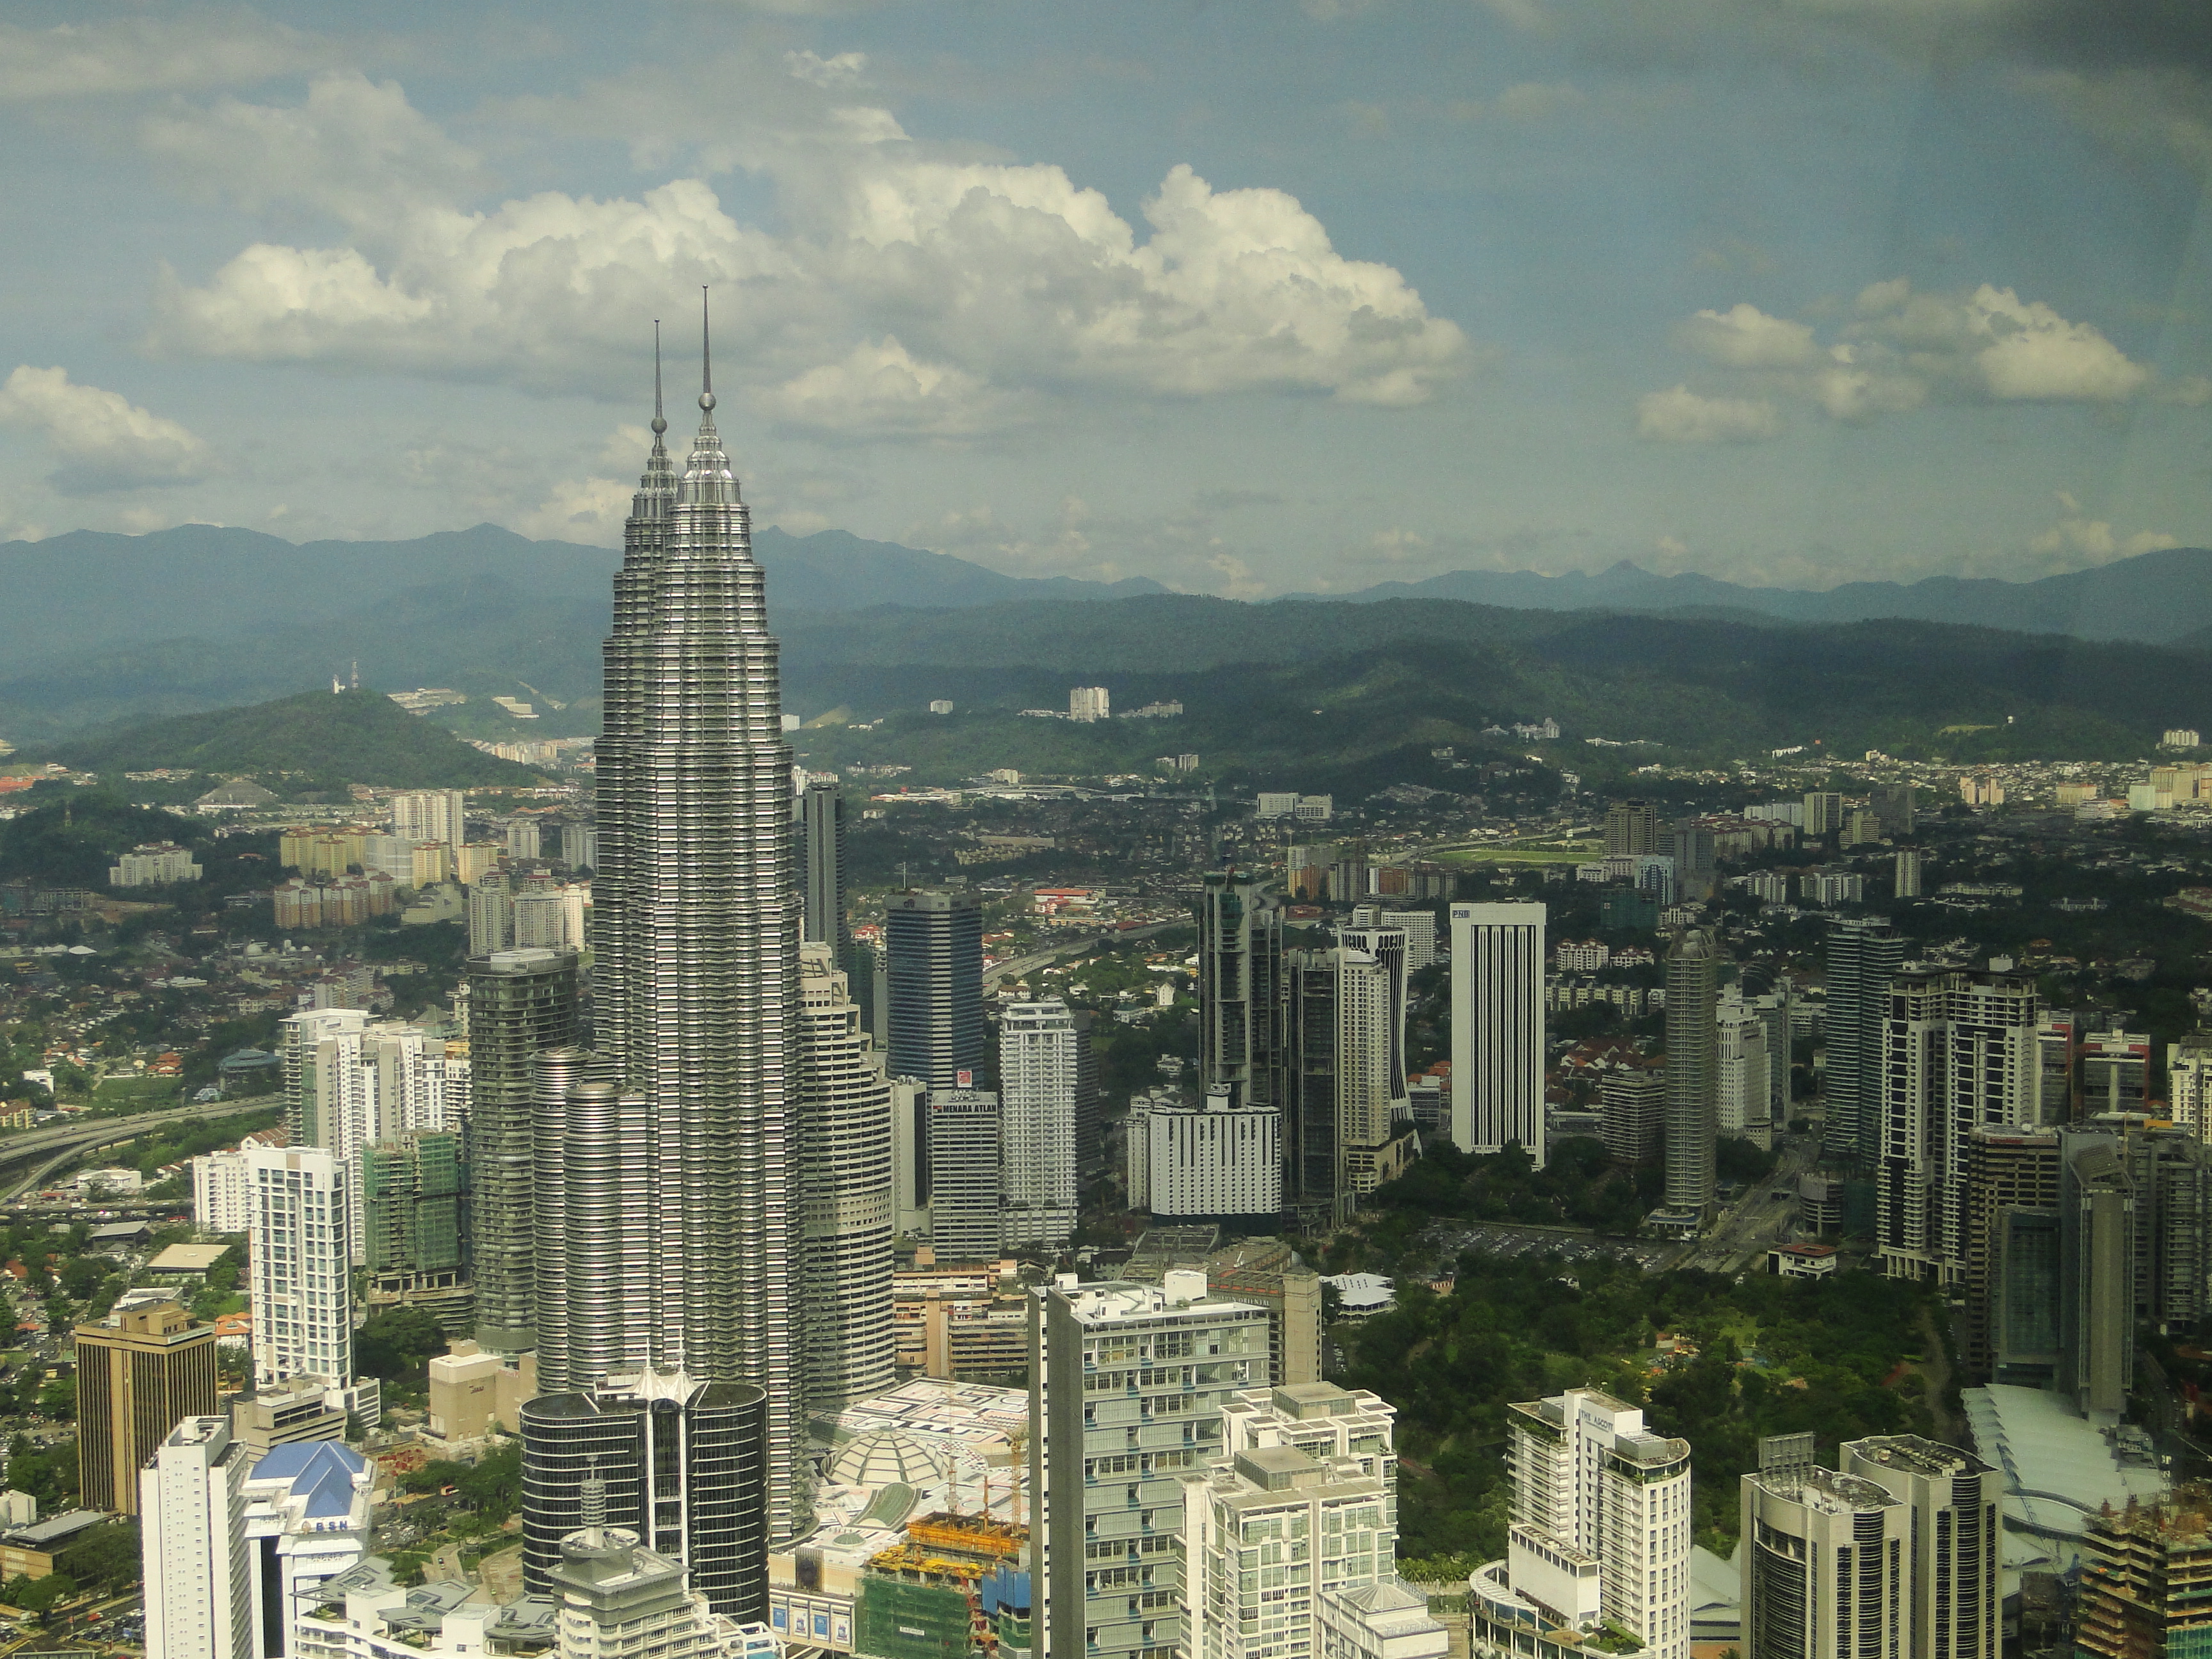 Petronas Towers in Kuala Lumpur, Malaysia